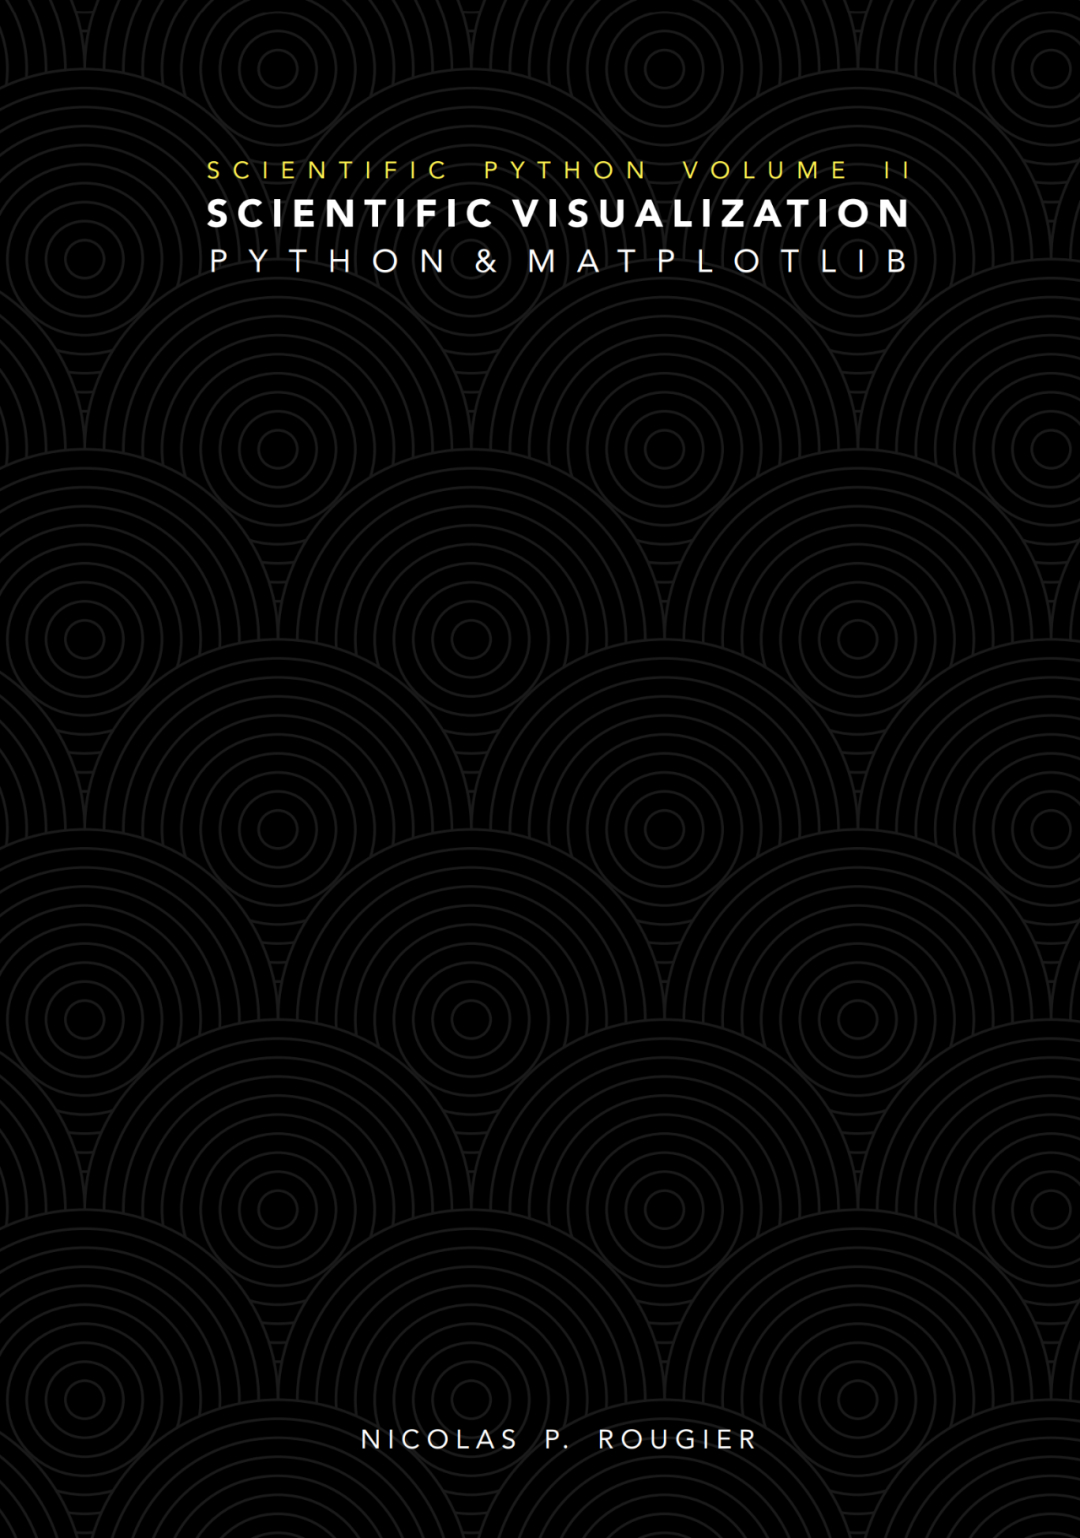 抛弃MATLAB，一本书掌握Python强大的绘图库Matplotlib